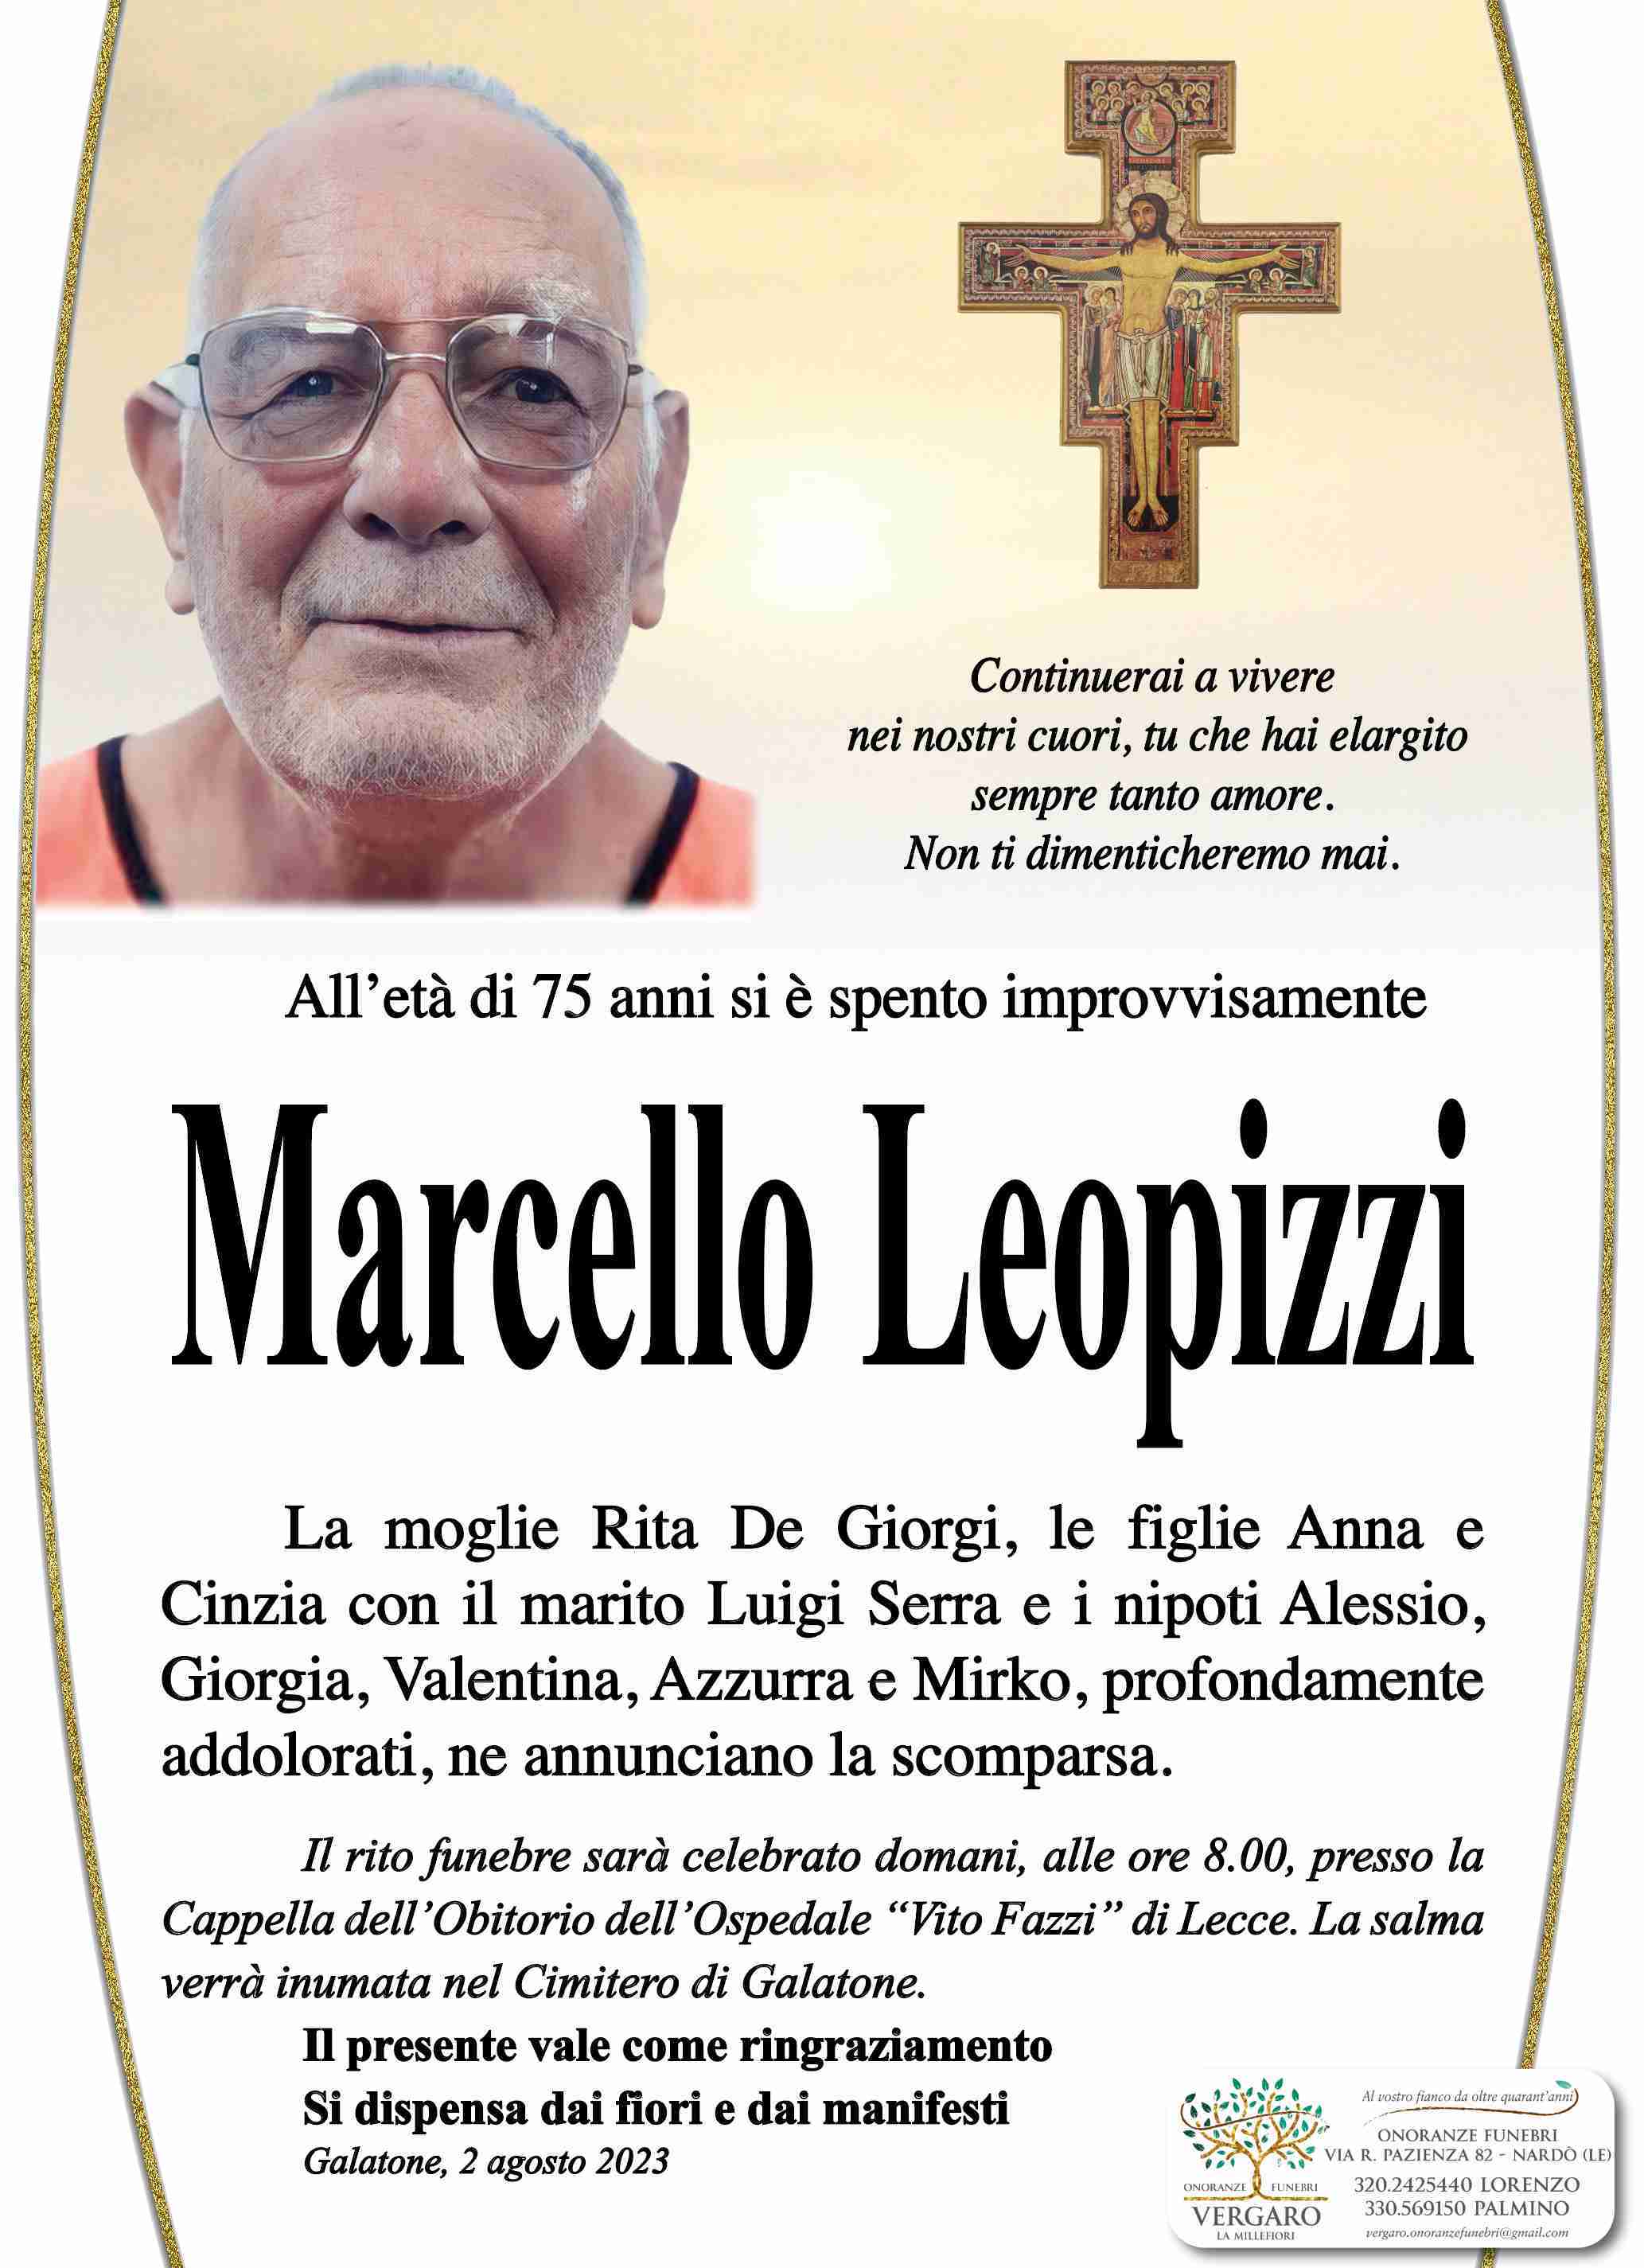 Marcello Leopizzi